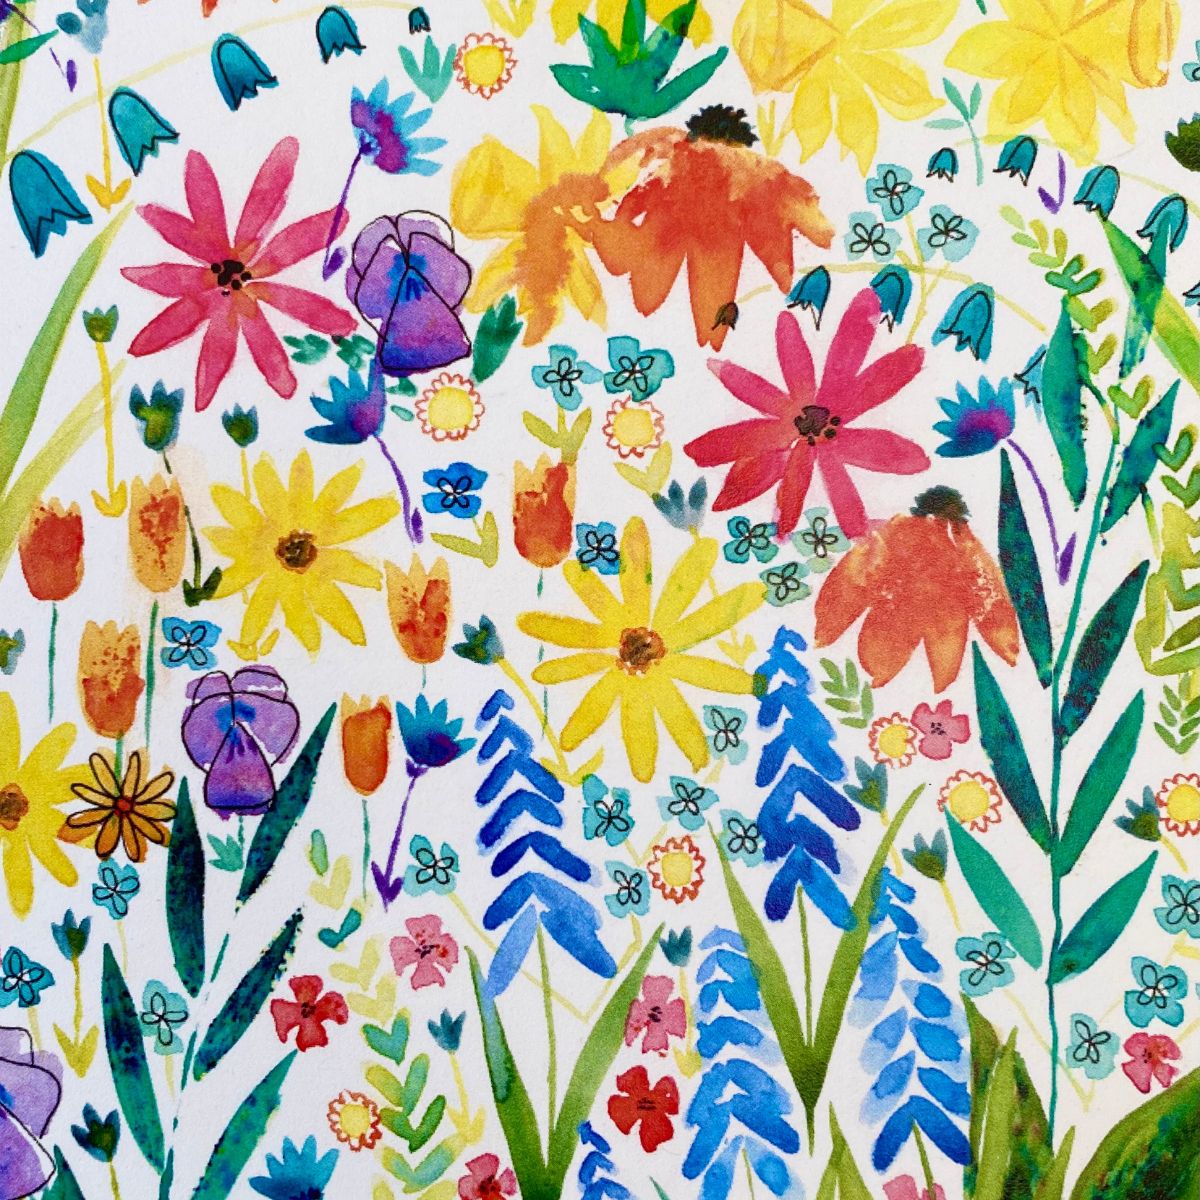 Watercolour flowers art by Cat Regi